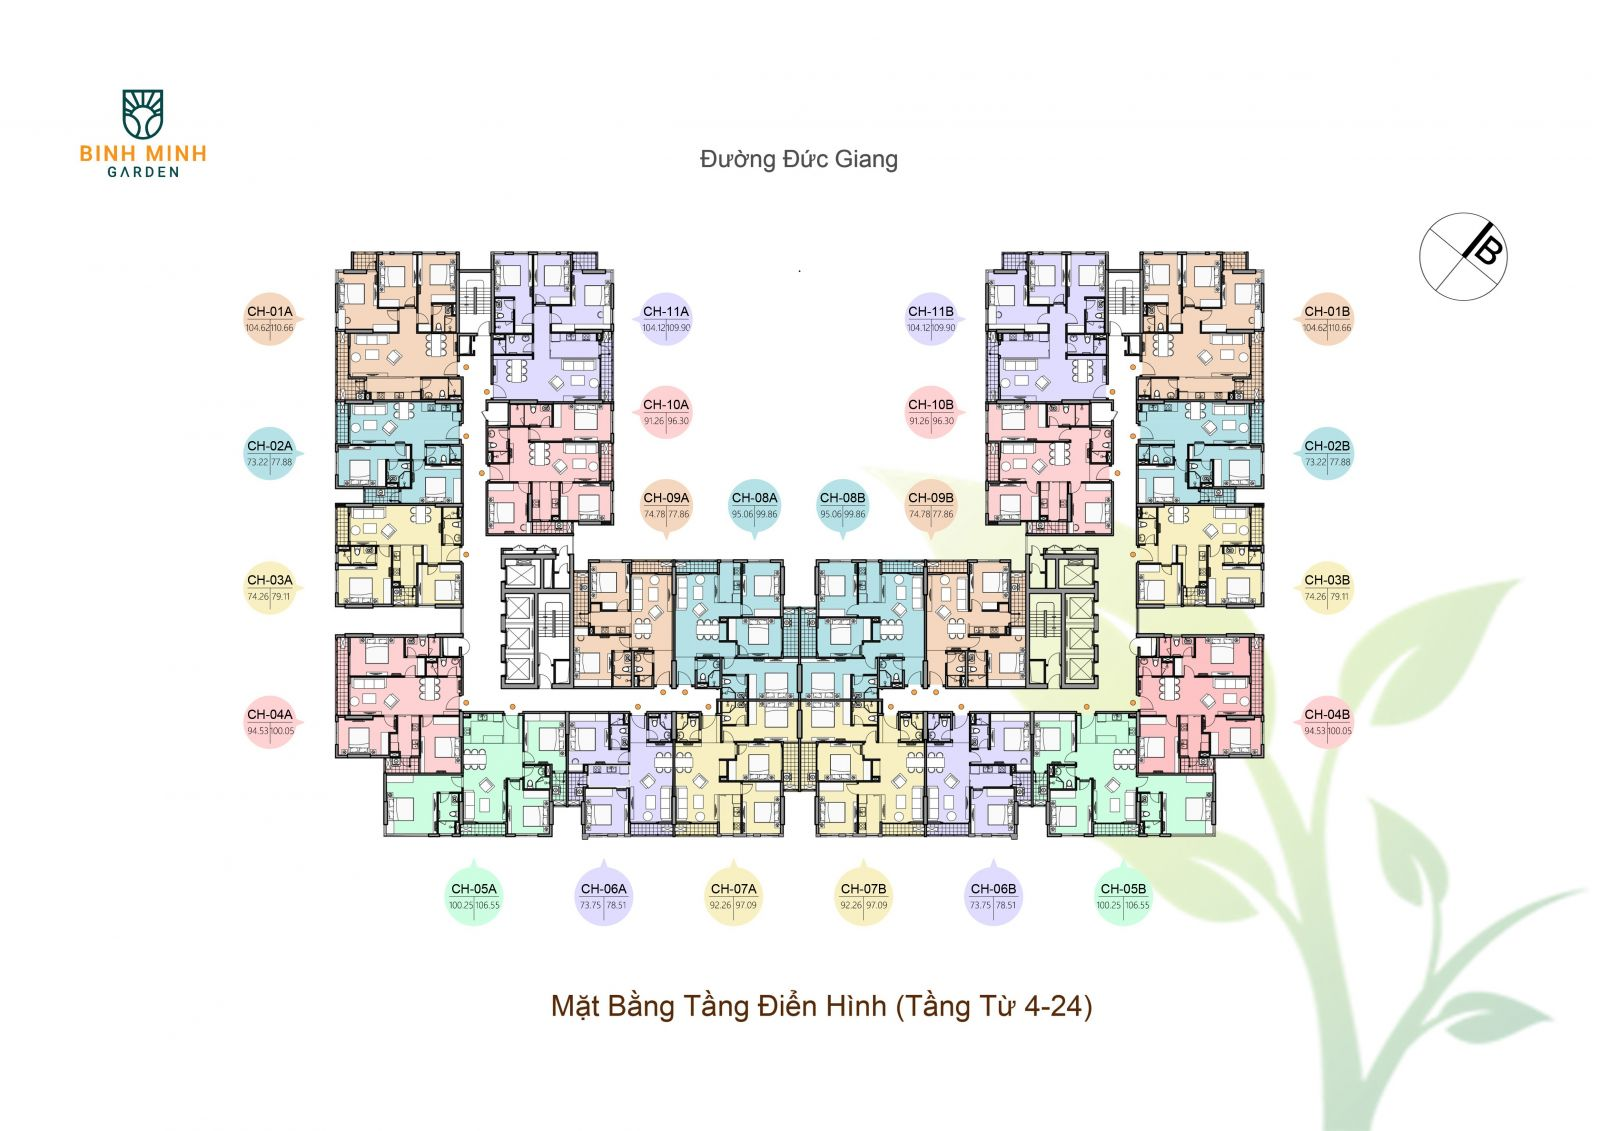 nhung-cau-hoi-thuong-gap-ve-chung-cu-binh-minh-garden-long-bien-cho-nguoi-mua-lan-dau-tham-khao-onehousing-3